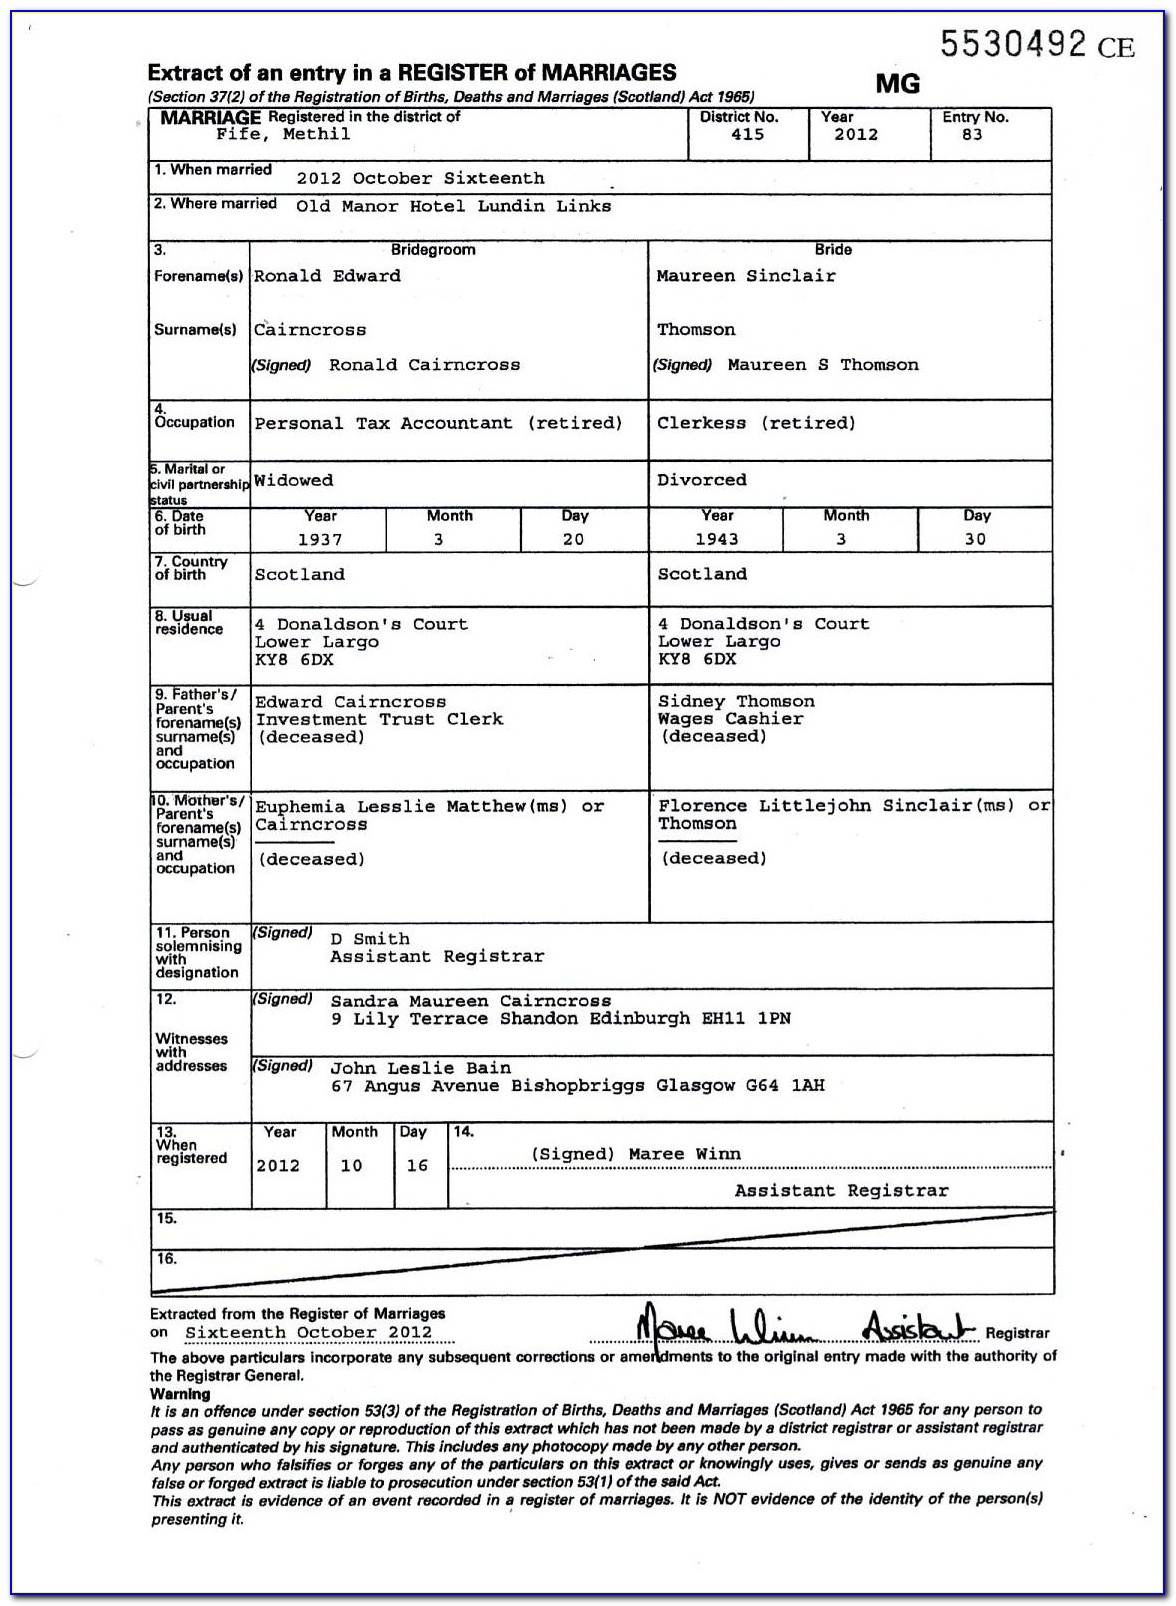 Edinburgh Birth Certificate Replacement